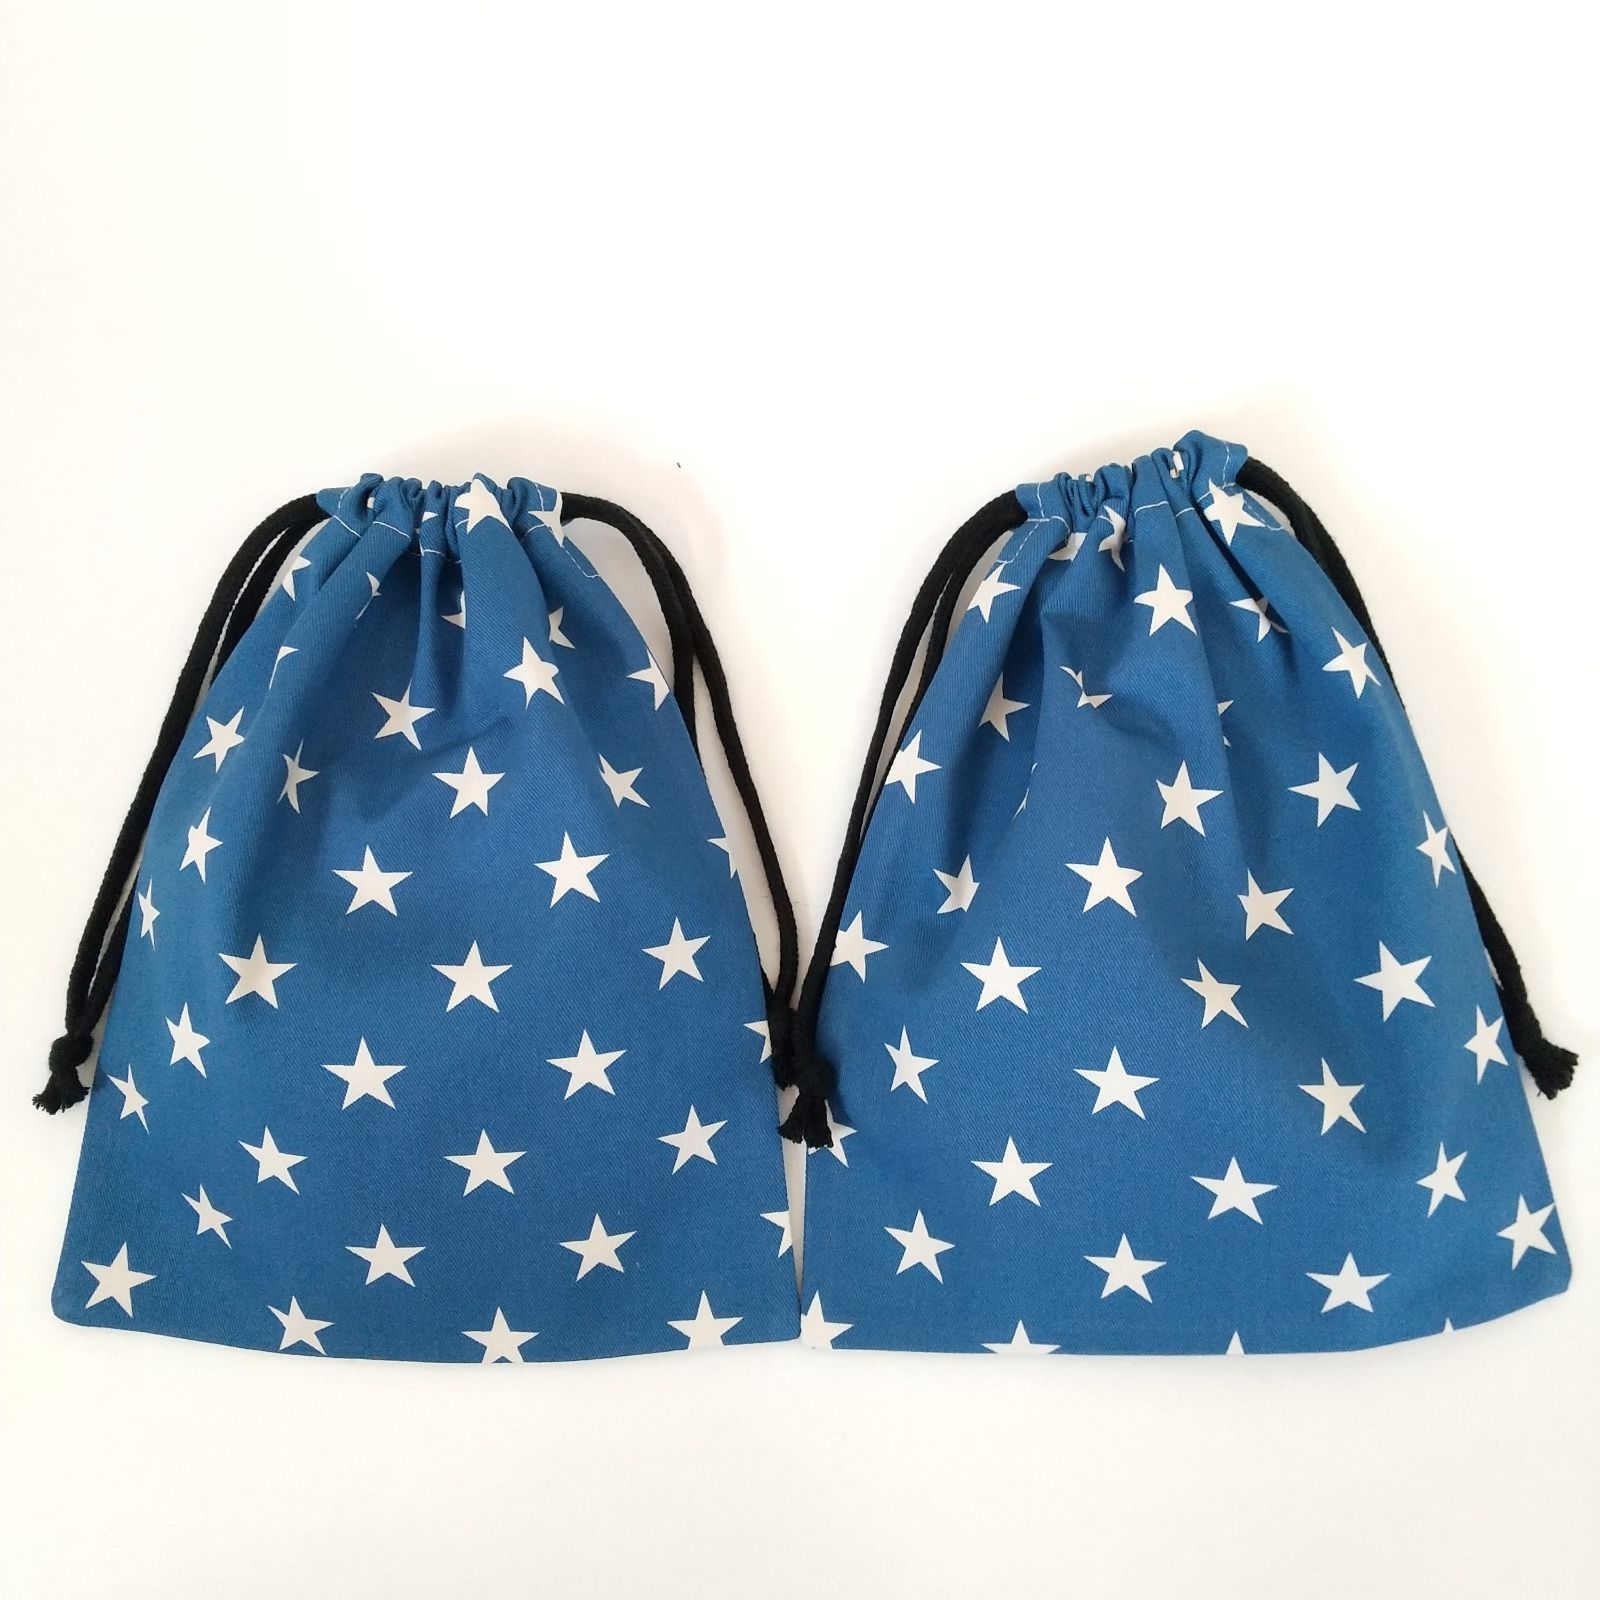 ２個セット 25×20 星柄 給食袋 ハンドメイド 巾着袋 男女兼用 ブルー